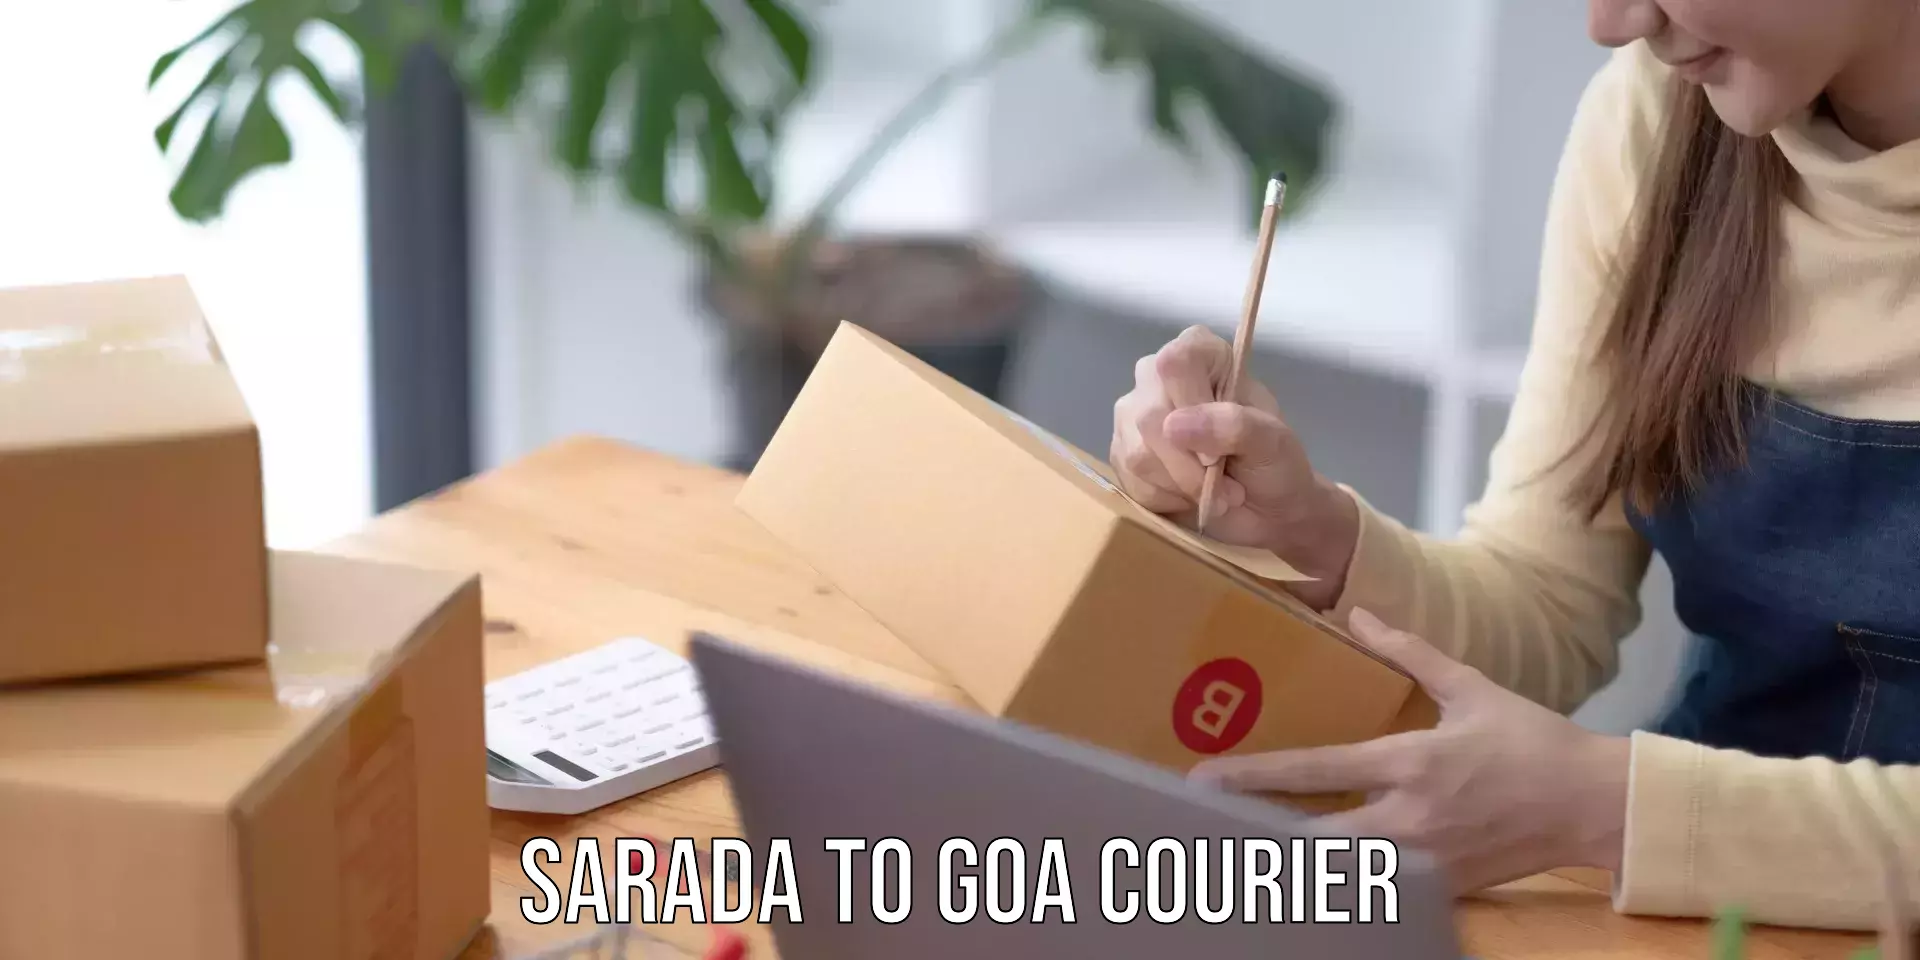 Premium courier services Sarada to Vasco da Gama